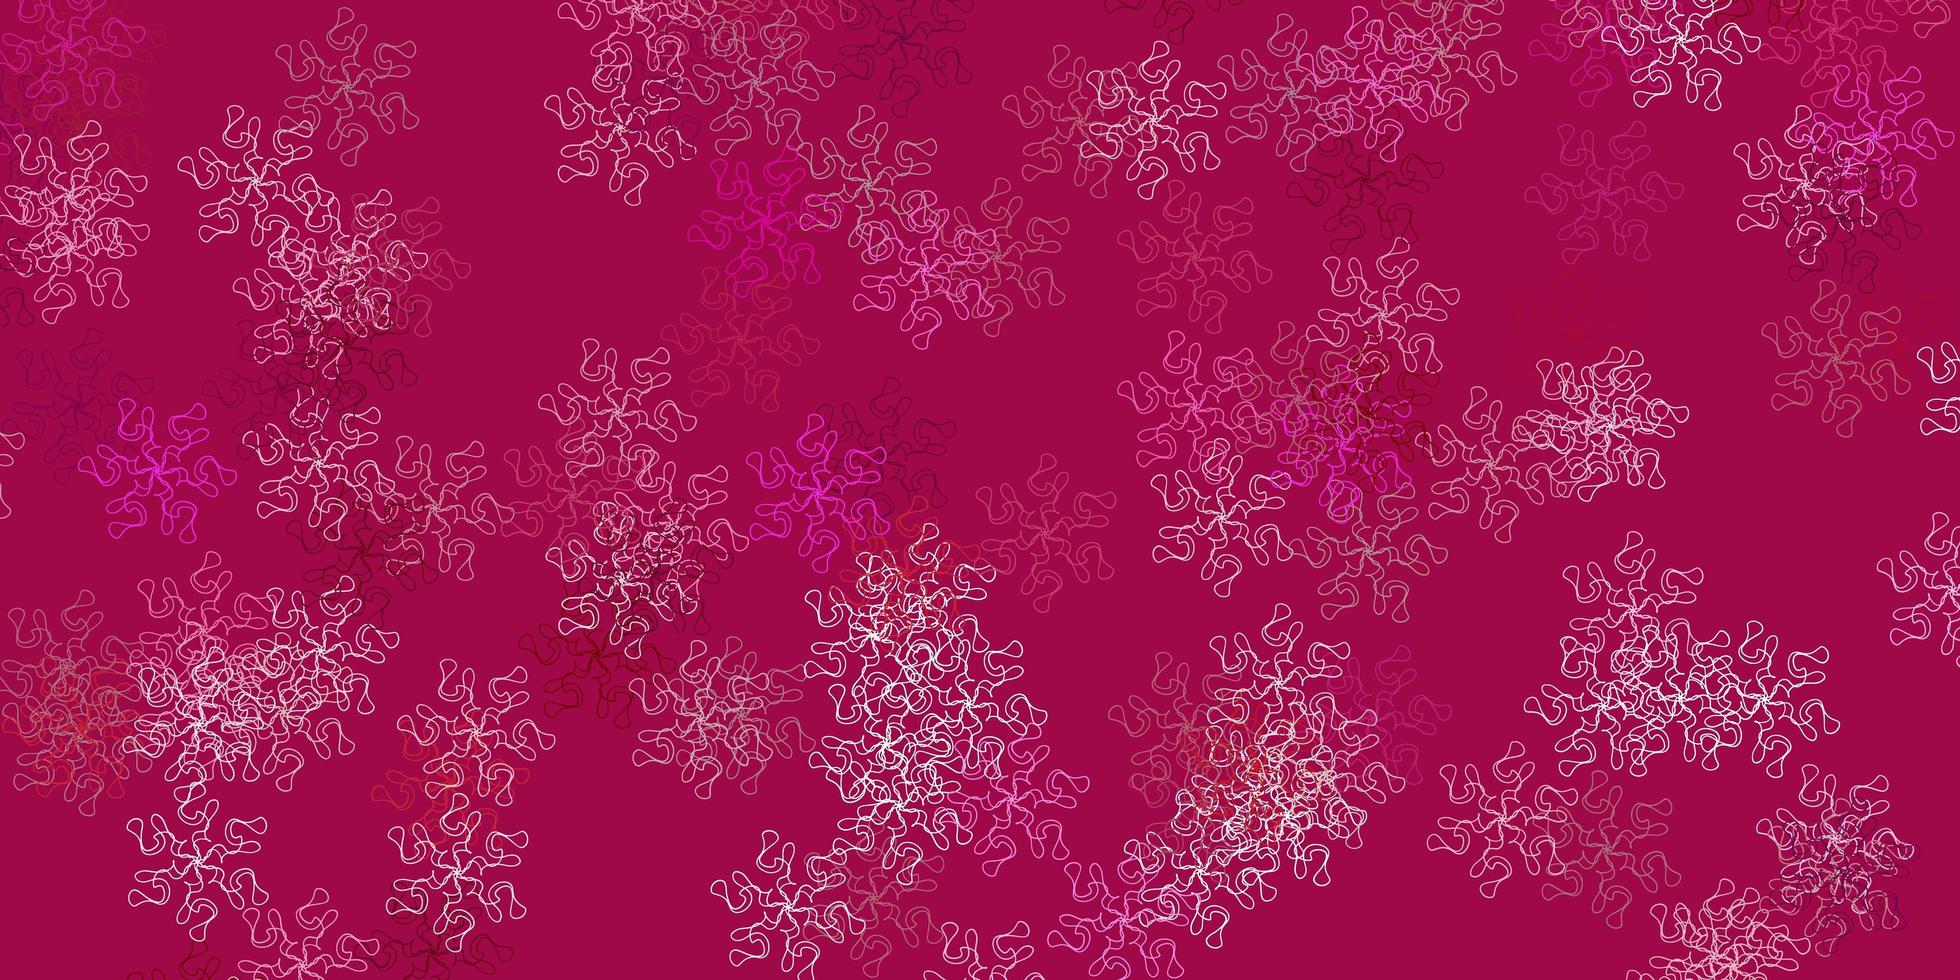 fundo do doodle do vetor rosa claro com flores.